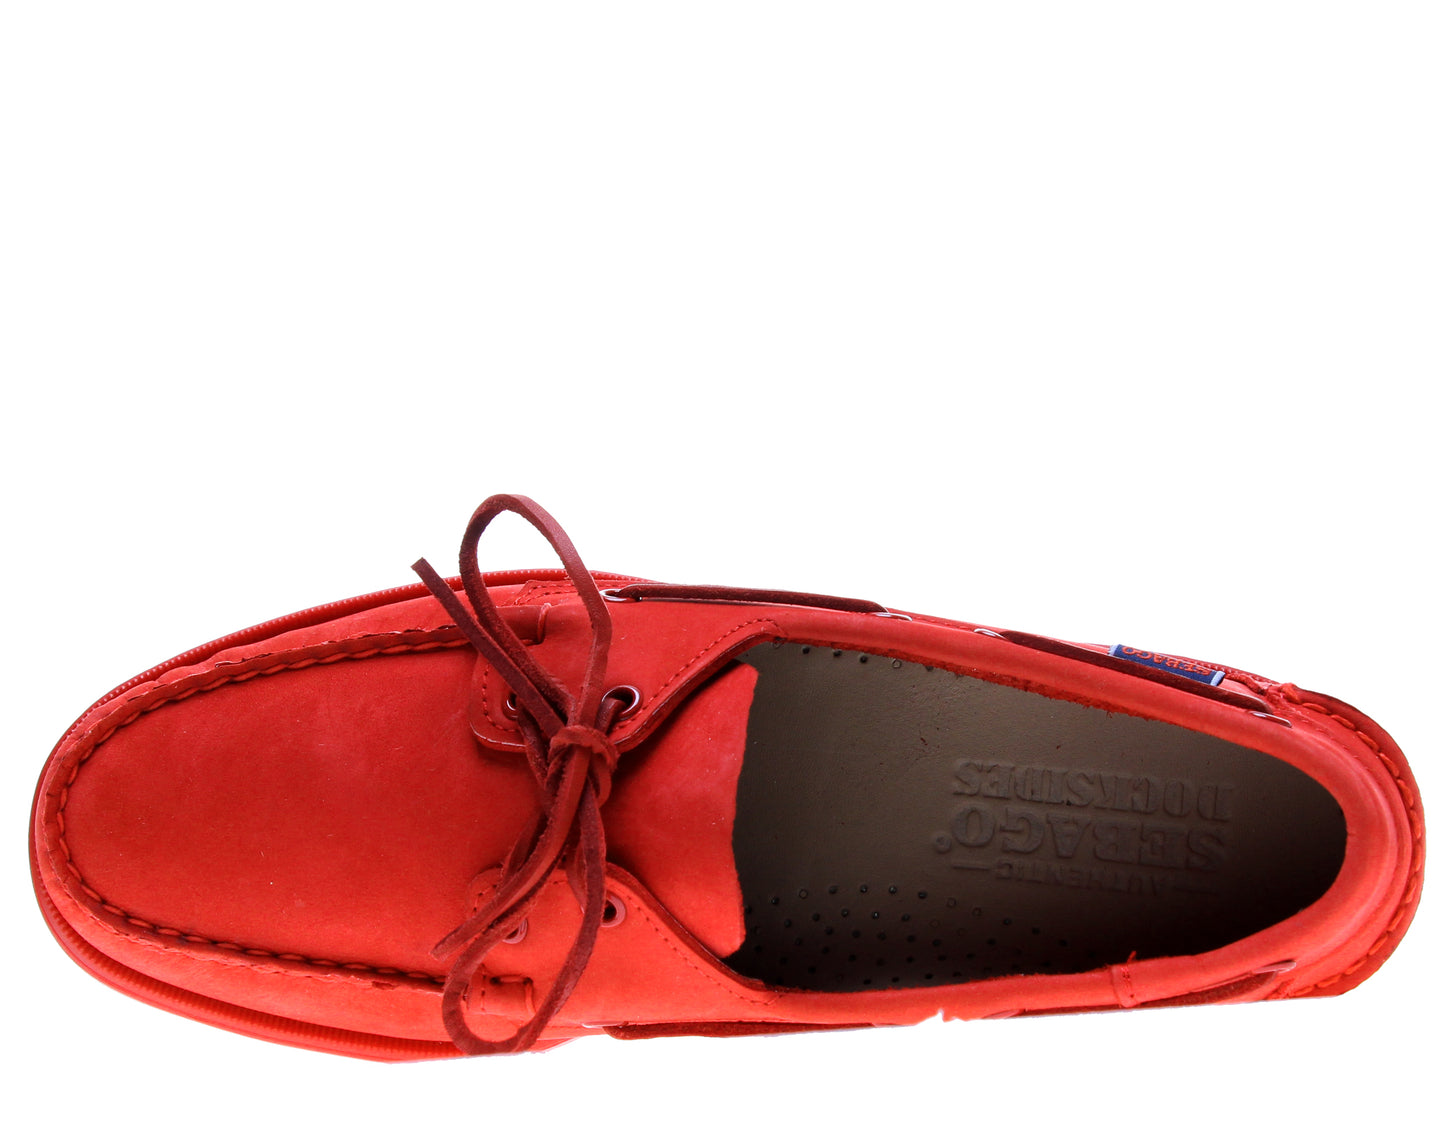 Sebago Docksides Men's Boat Shoes